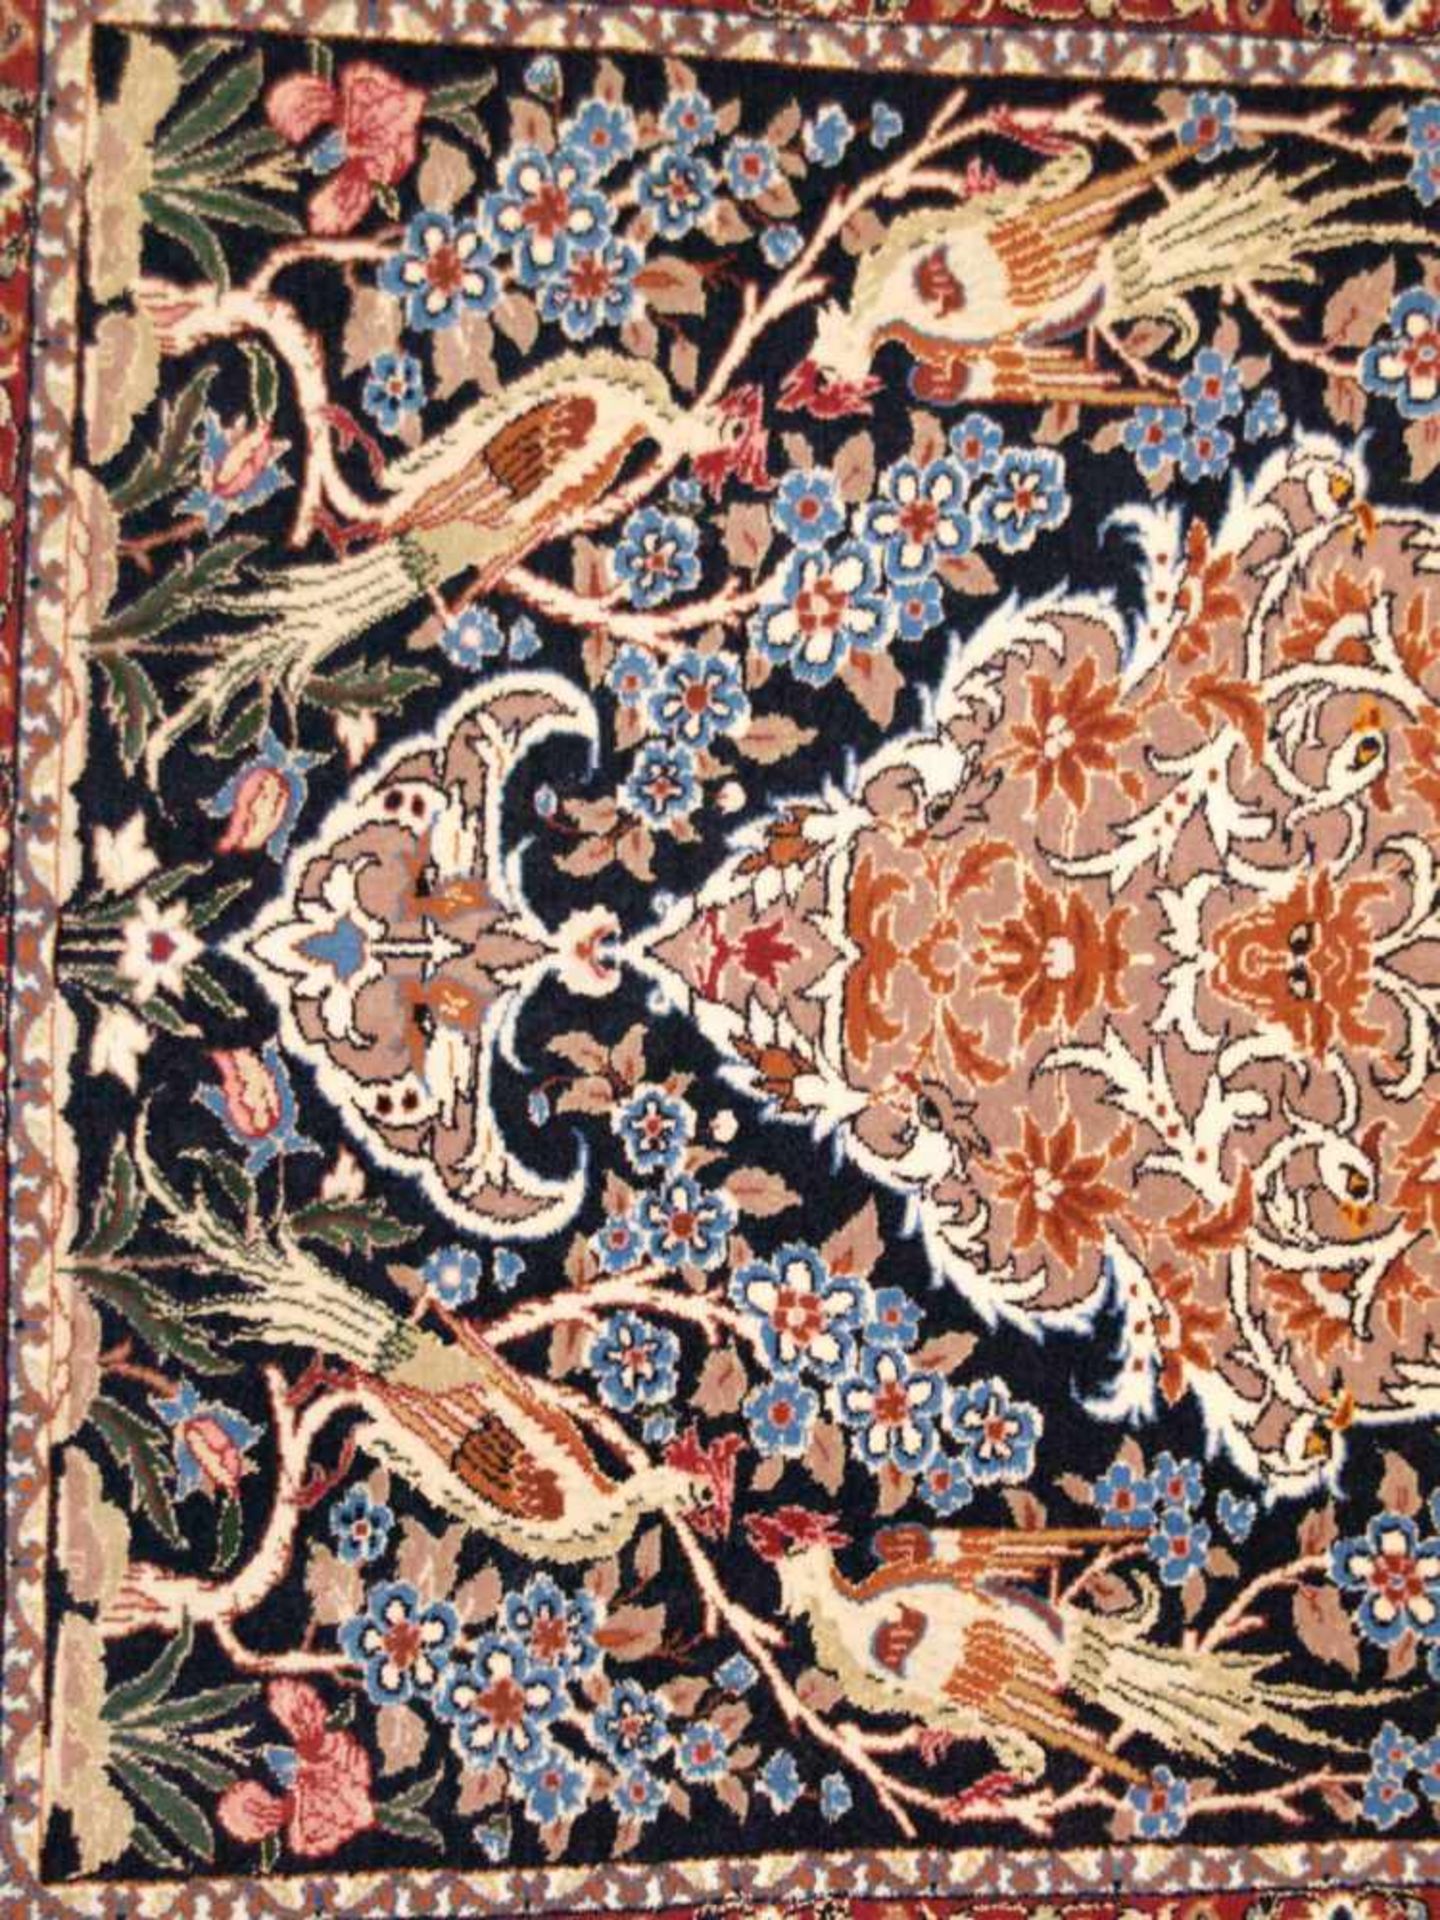 Orientteppich - Wolle und Seide, blaugrundig, zentrale florale Kartusche, gerahmt von Vögeln, - Bild 9 aus 11